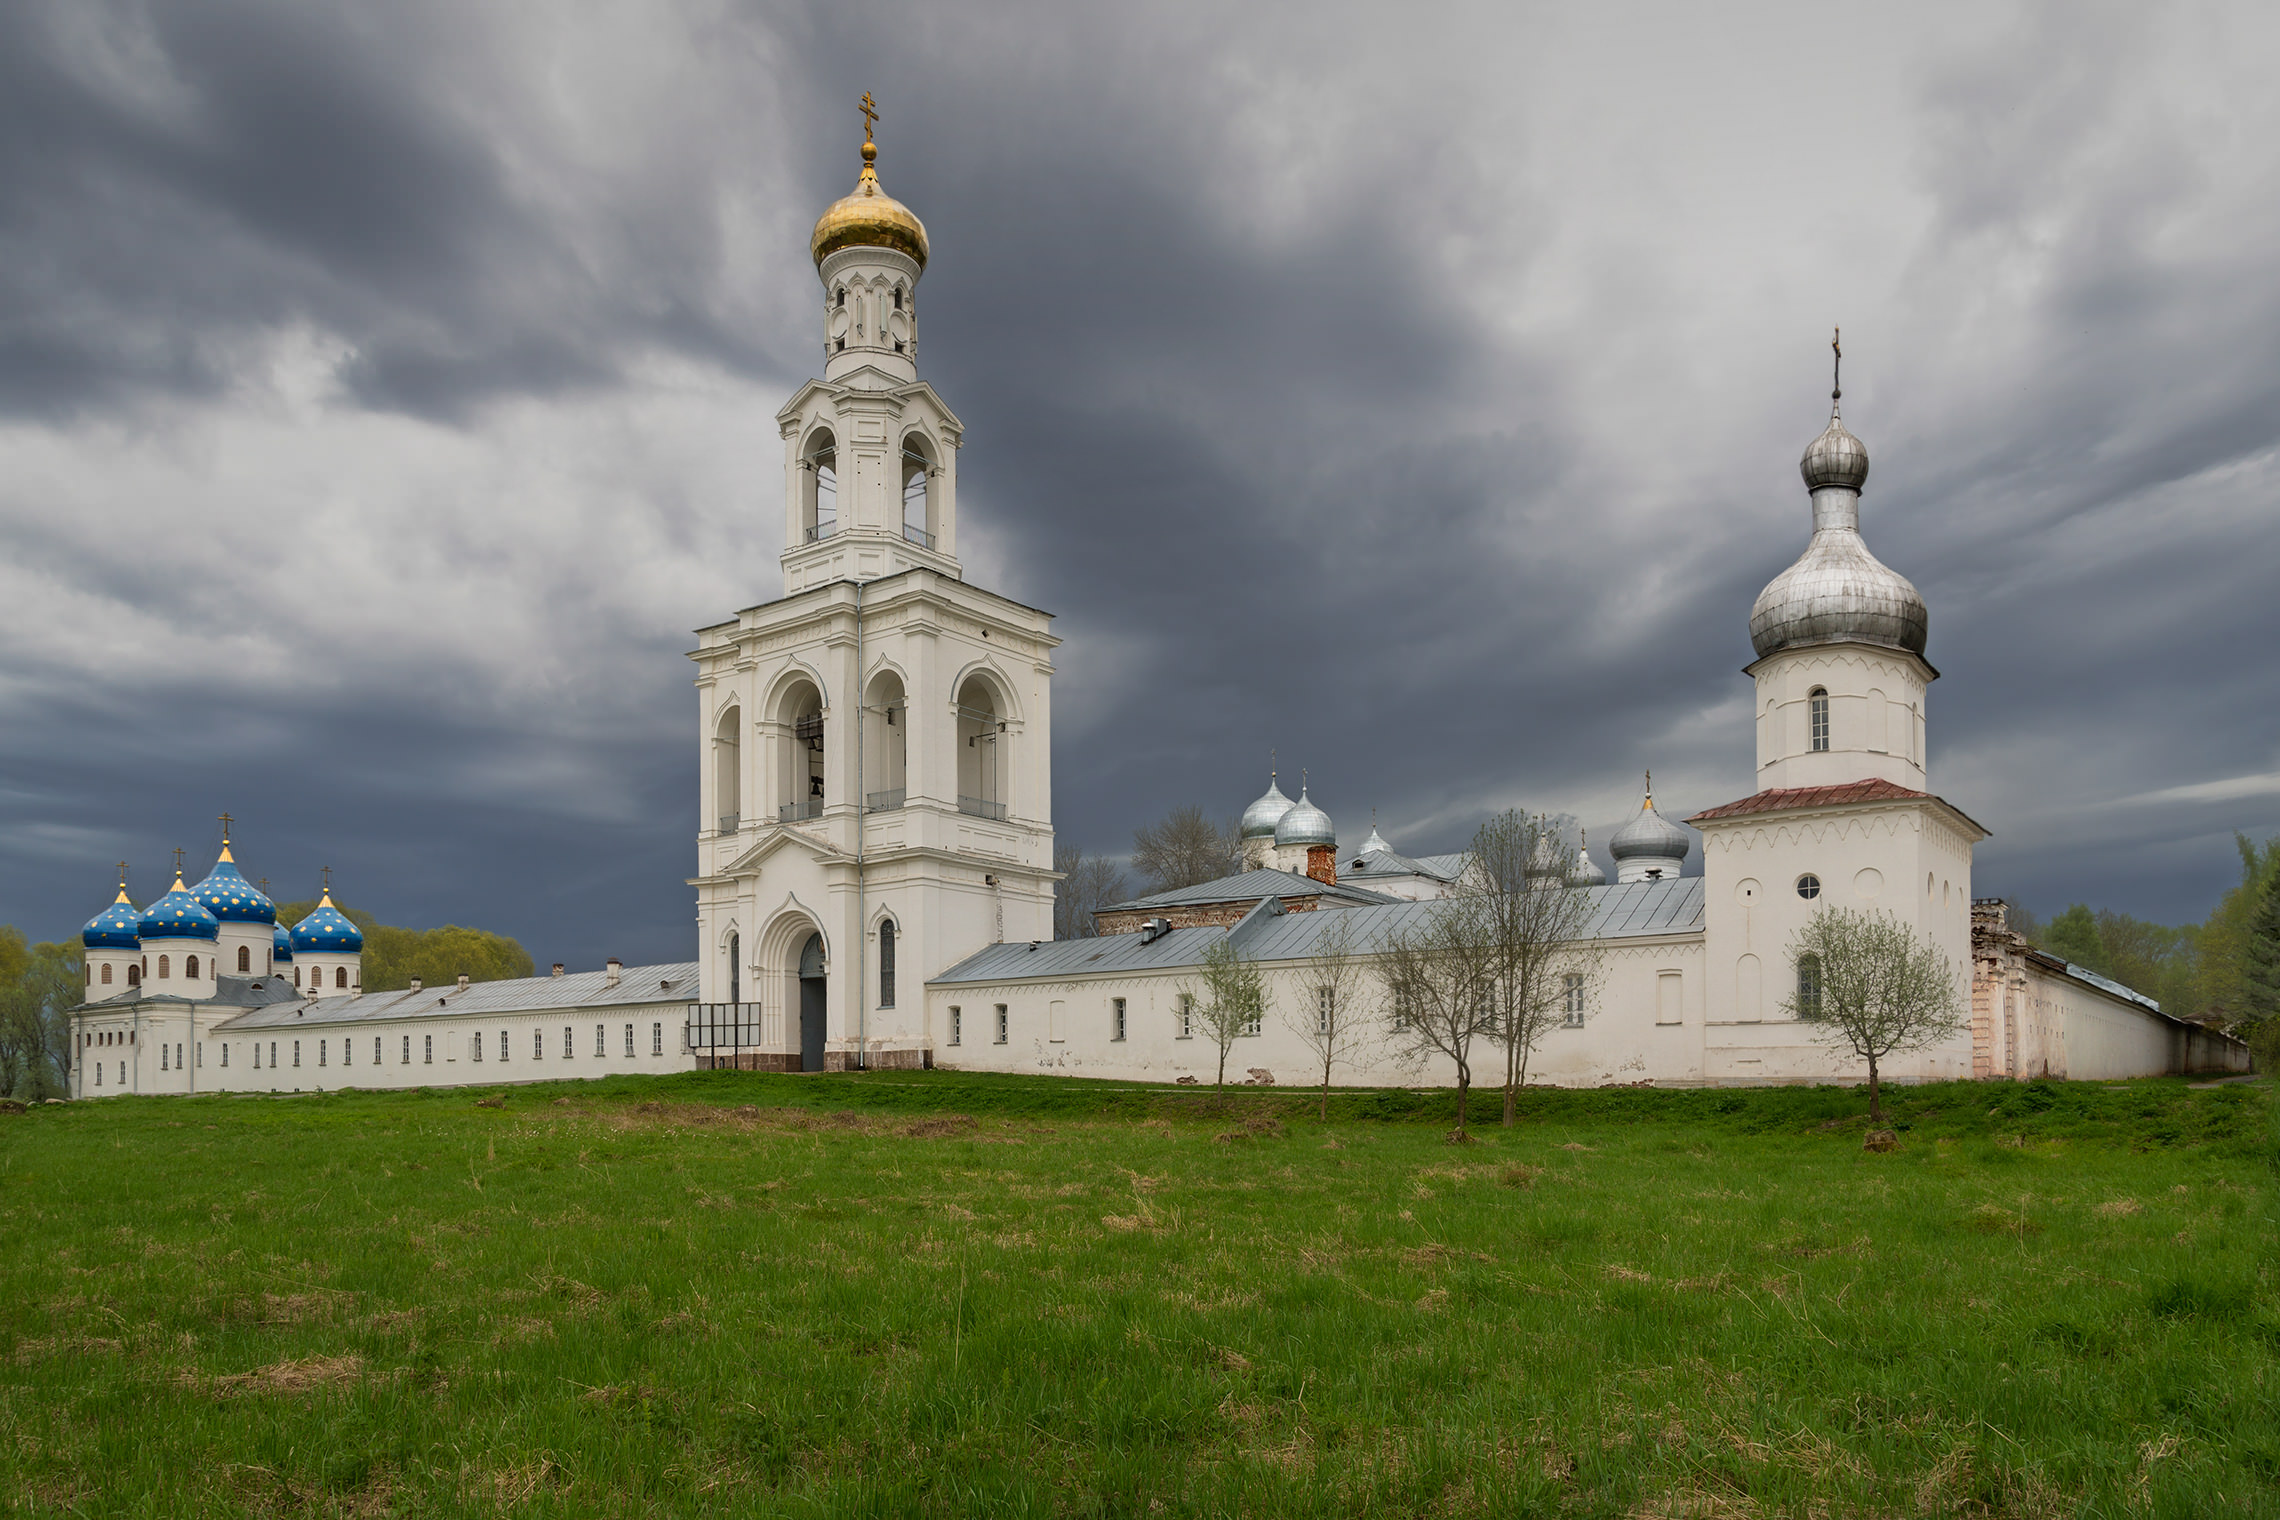 Юрьев монастырь, перед дождем